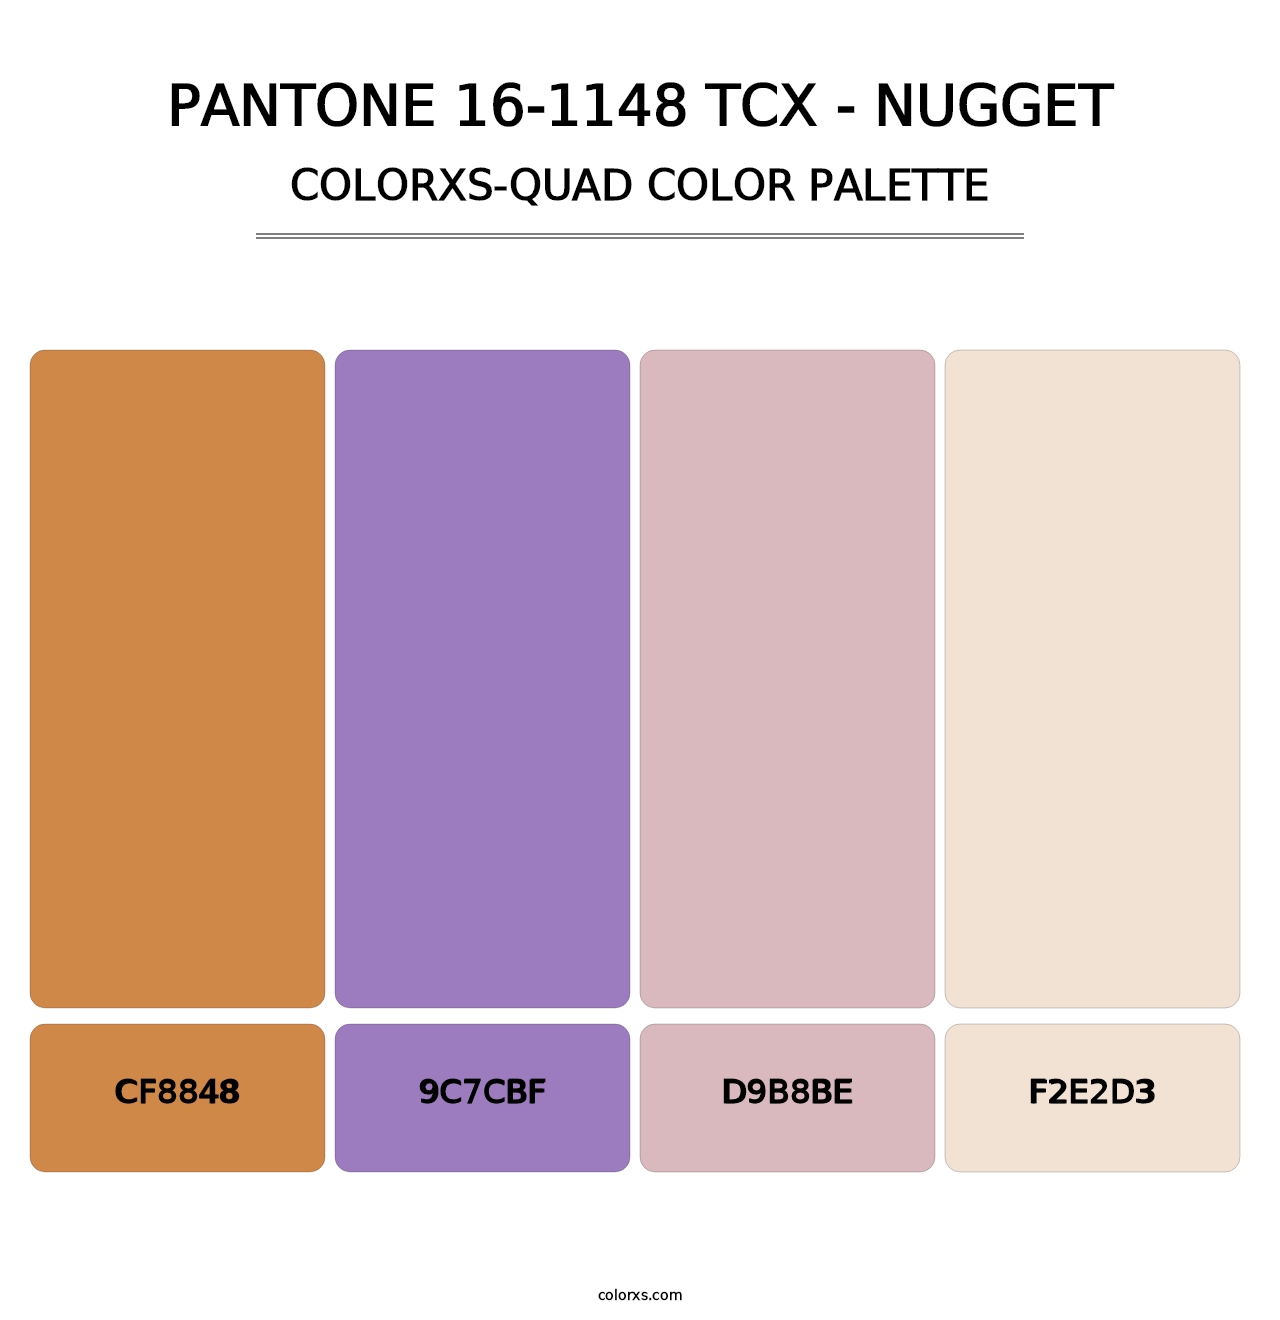 PANTONE 16-1148 TCX - Nugget - Colorxs Quad Palette